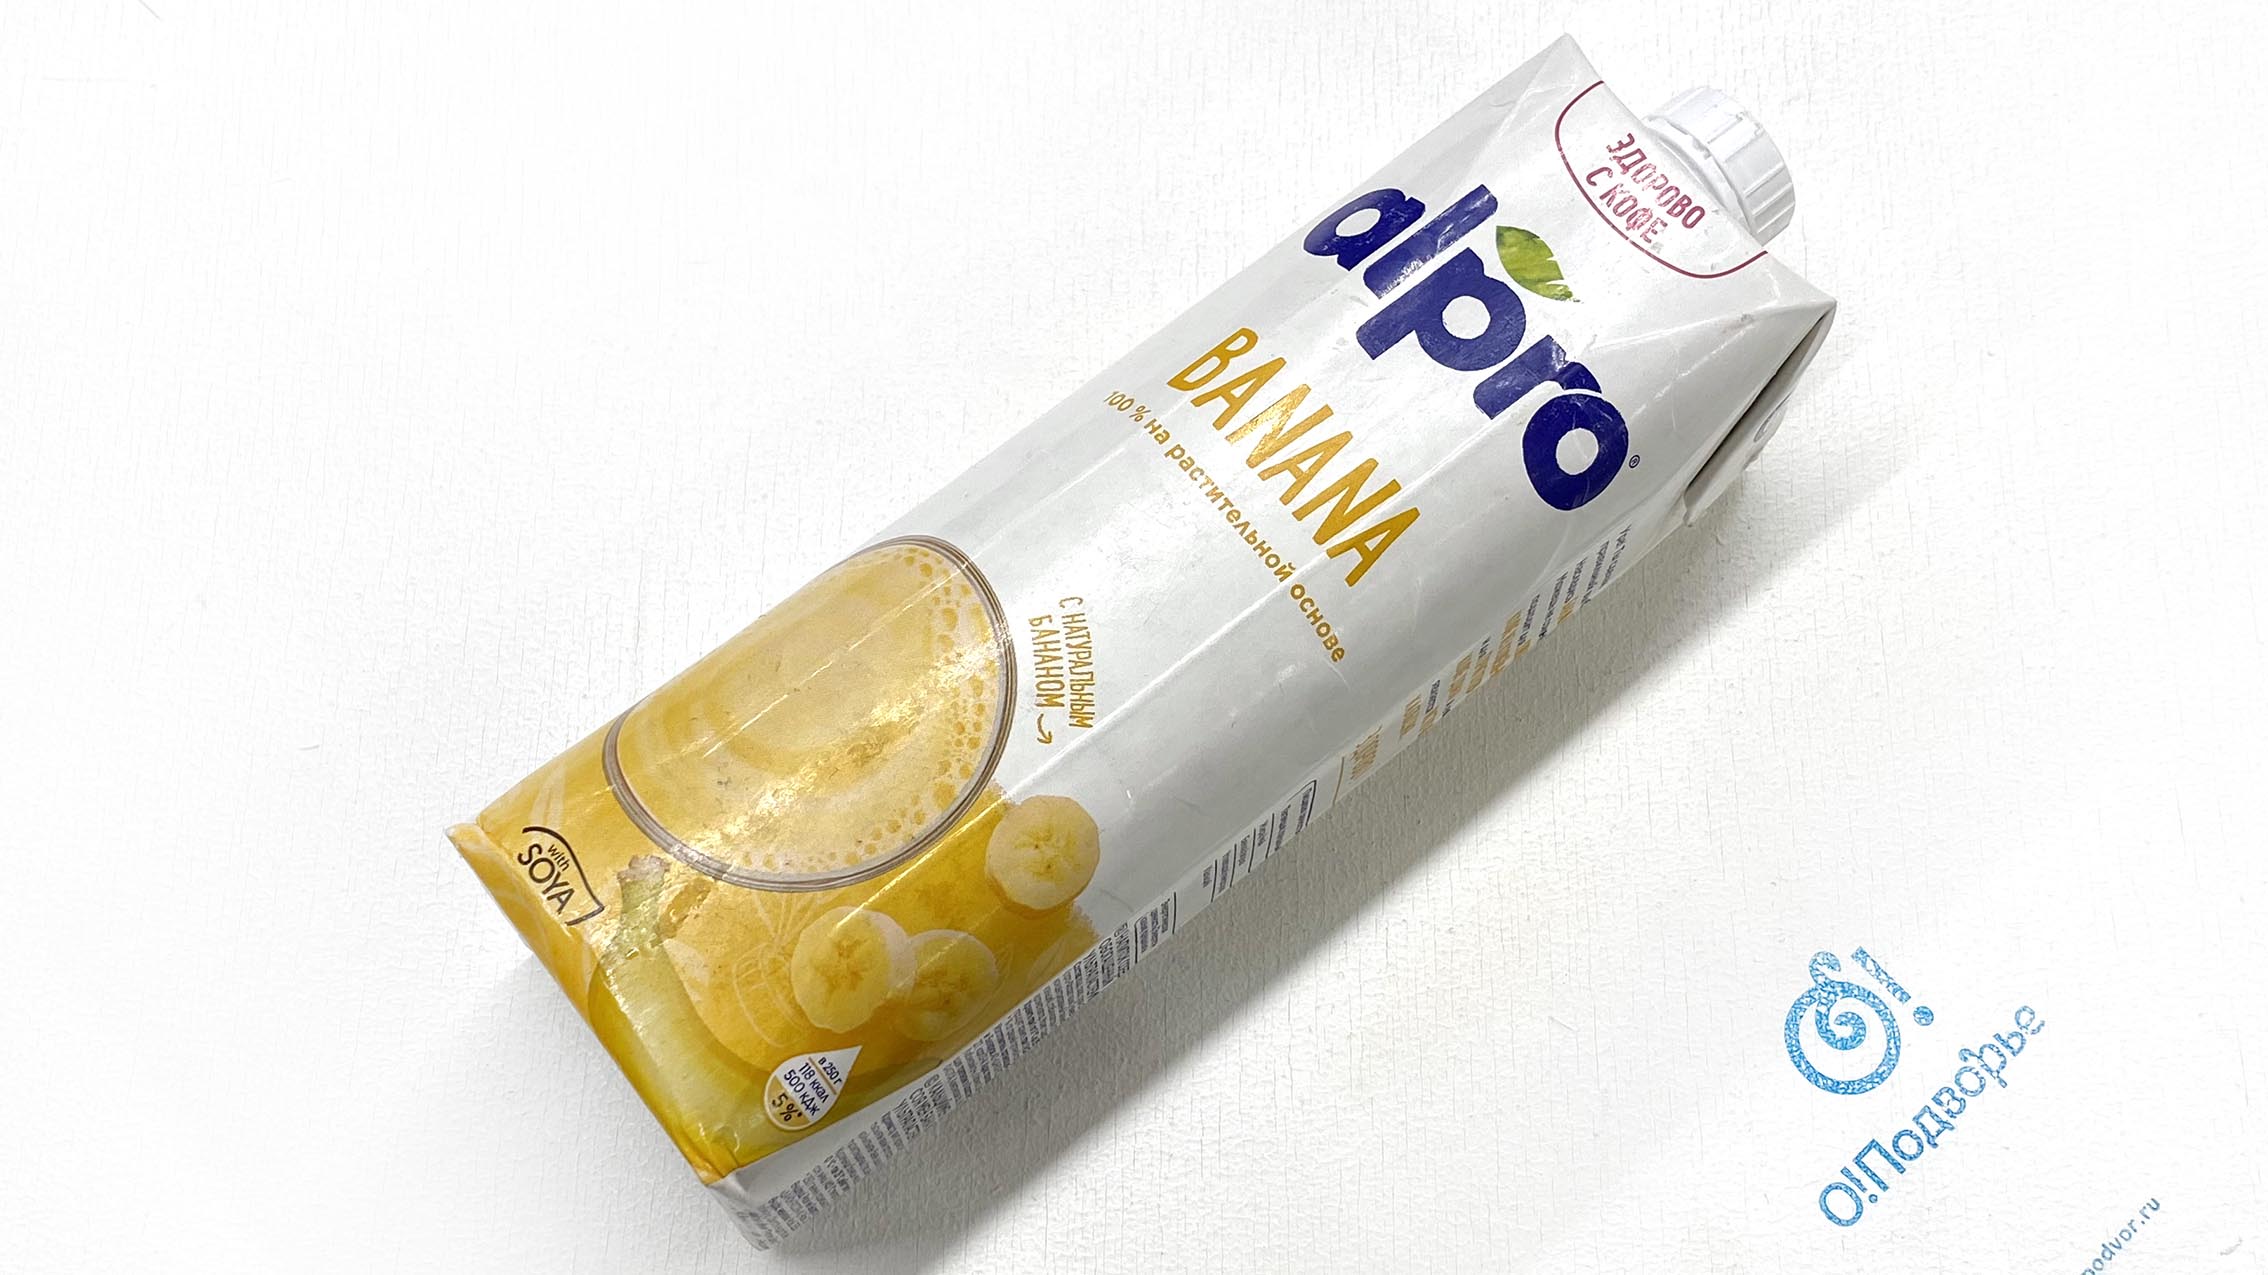 ALPRO Напиток соево-банановый "Banana", обогащенный кальцием, ультрапастеризованный, АО "Данон Россия, 1 литр, (Зл)